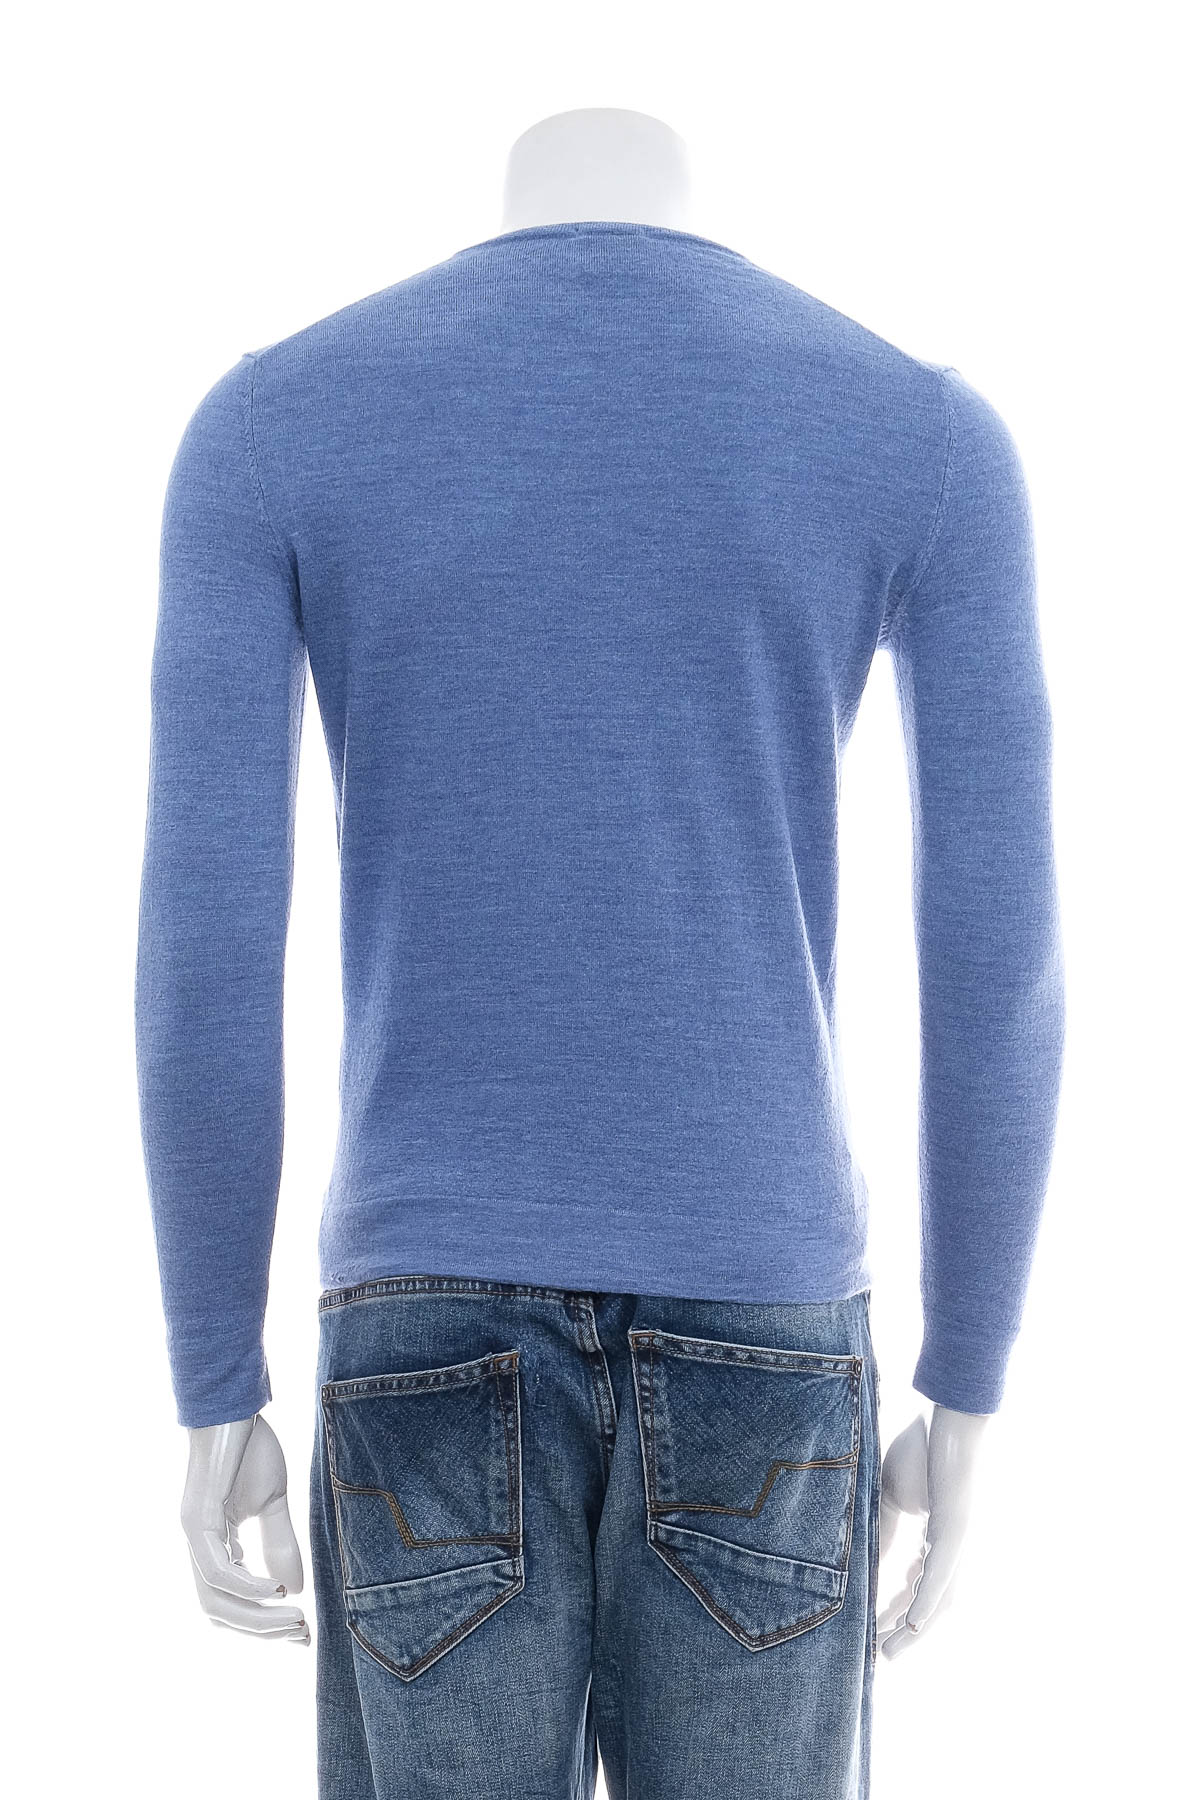 Men's sweater - Strellson - 1